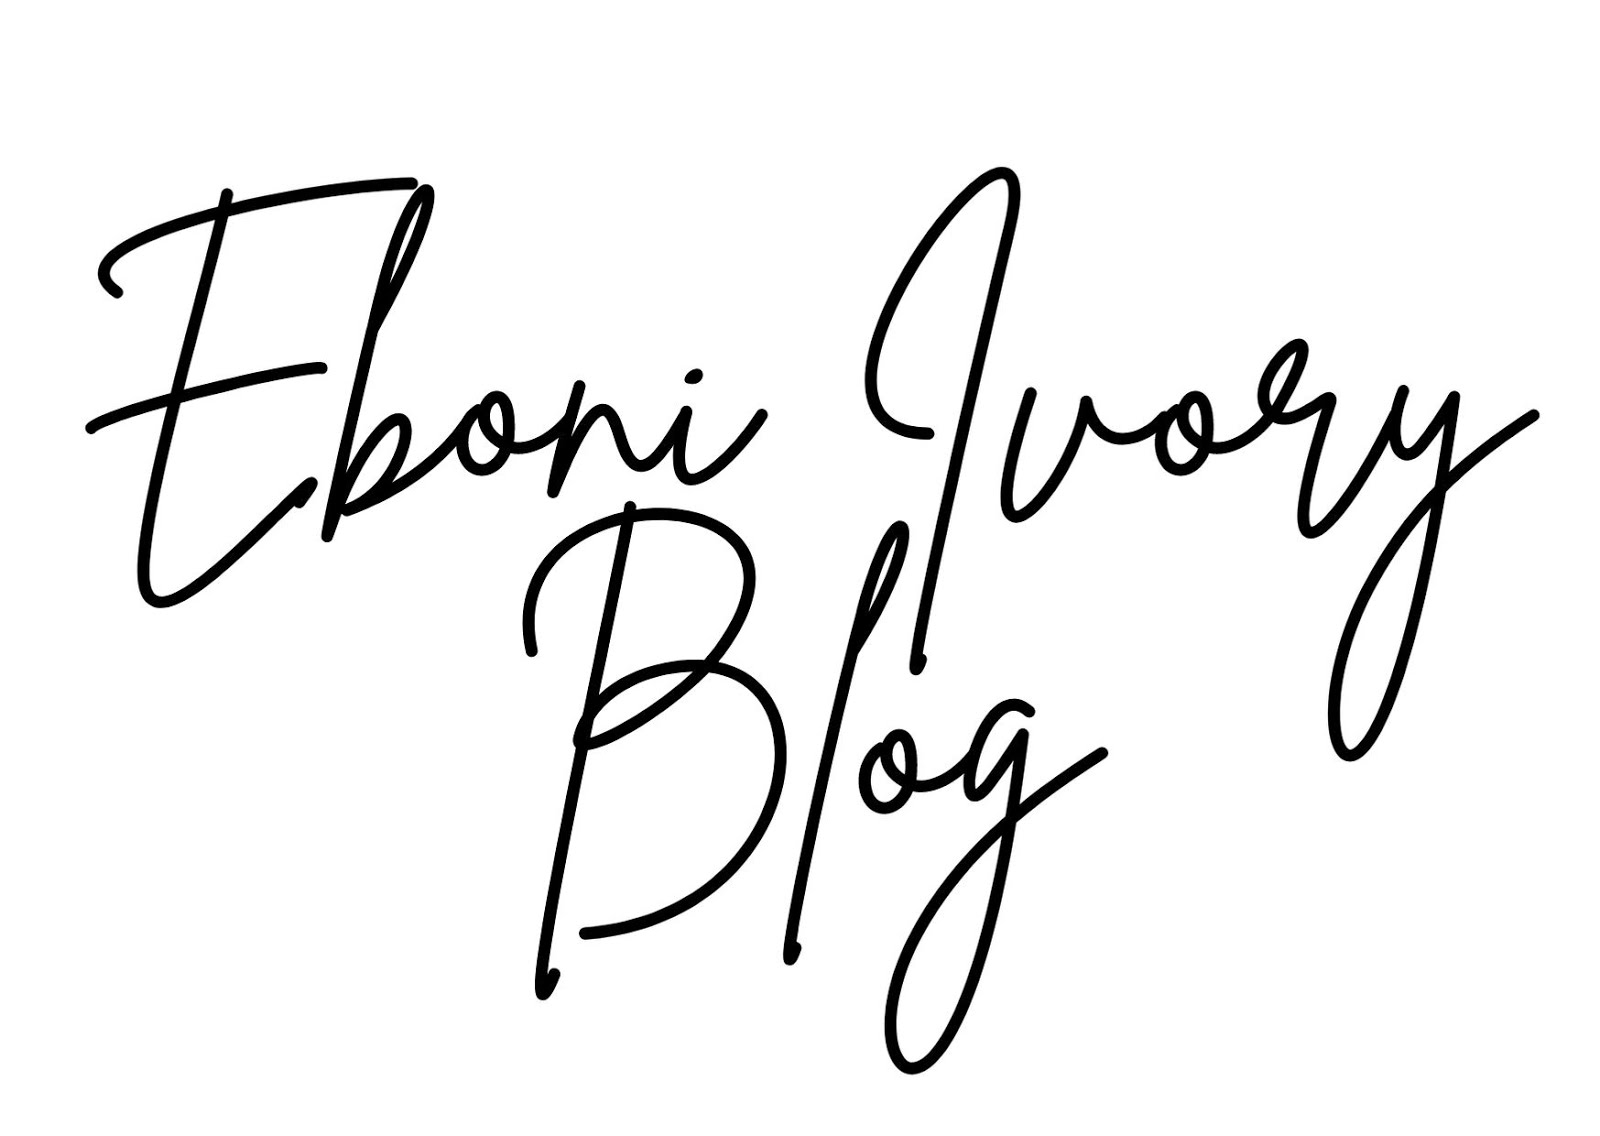 Eboni Ivory Blog